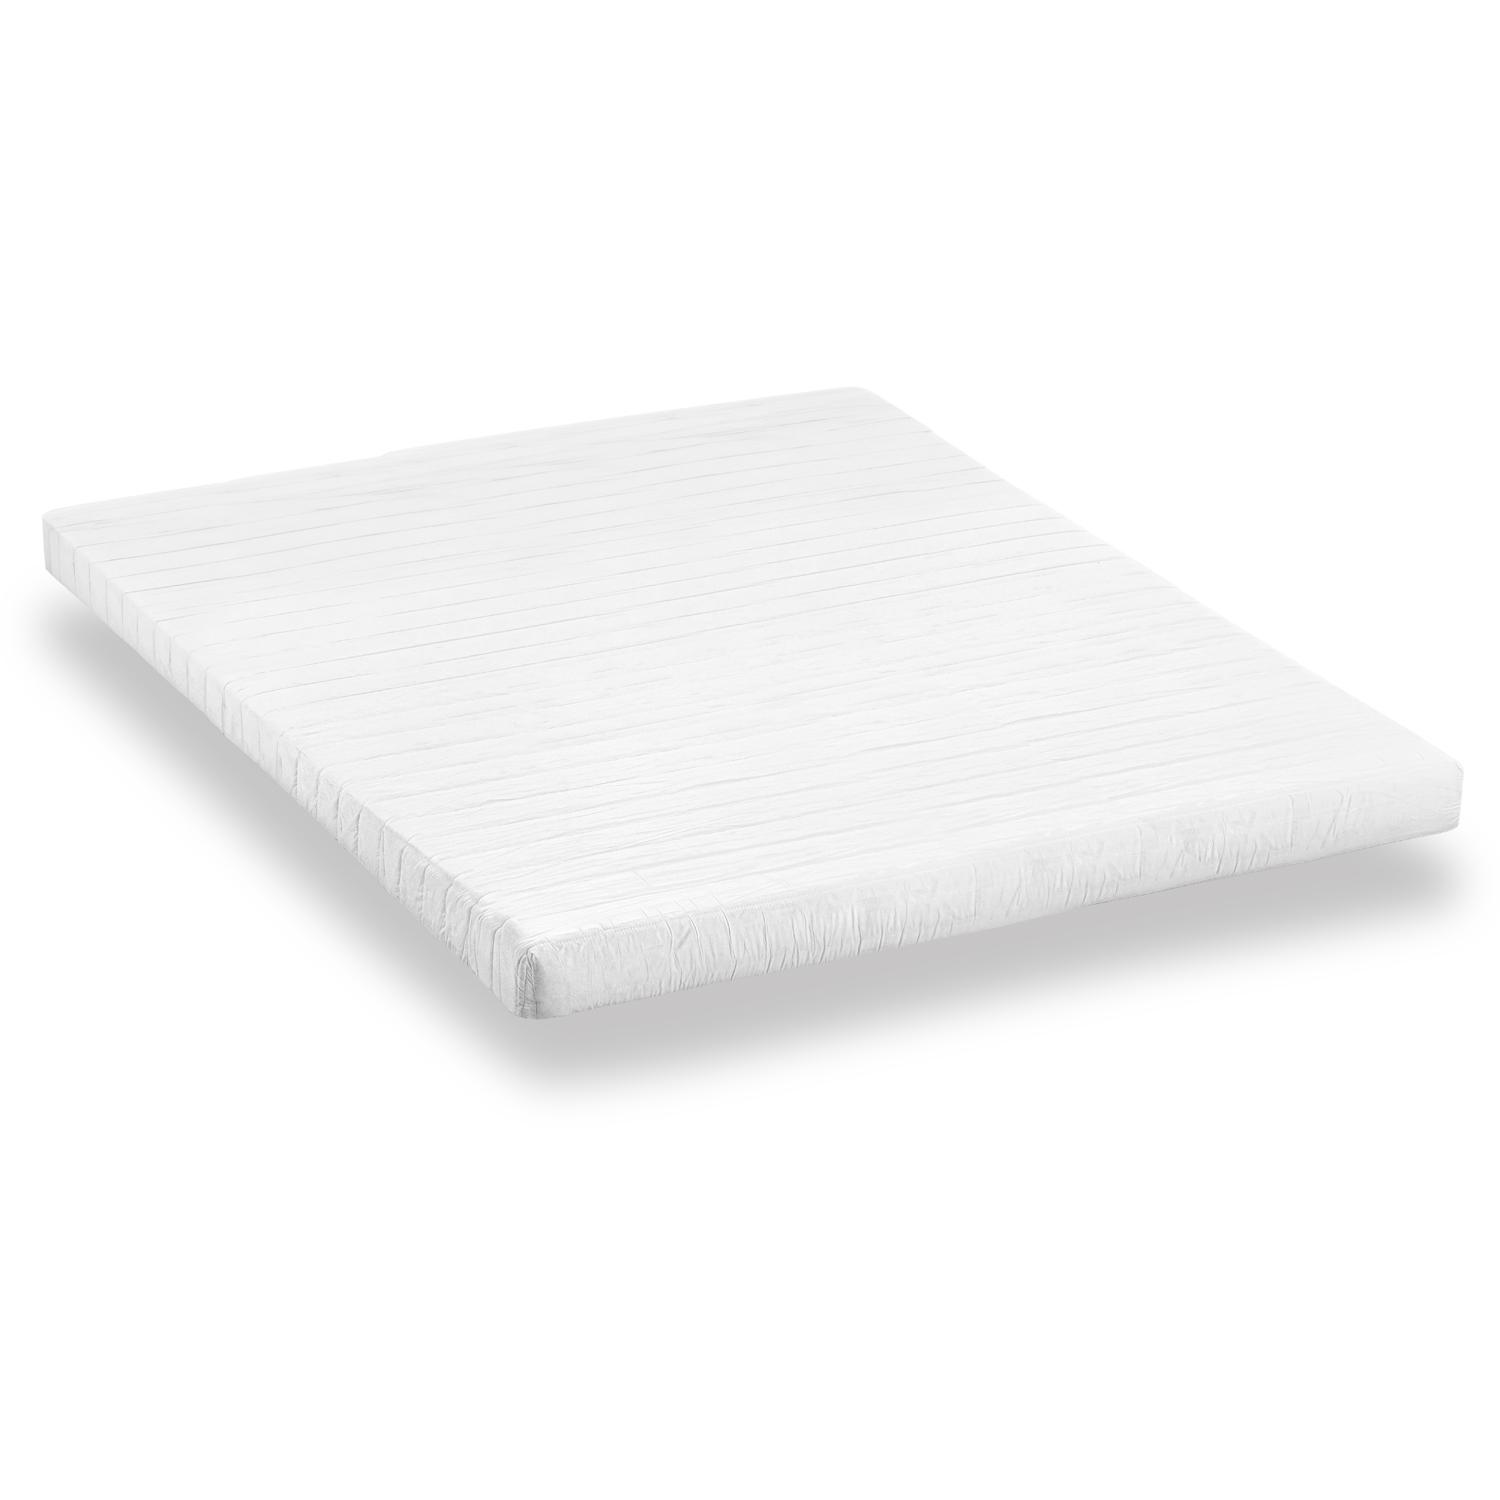 Comfort foam mattress K10 160 x 200 cm, height 10 cm, firmness level H3